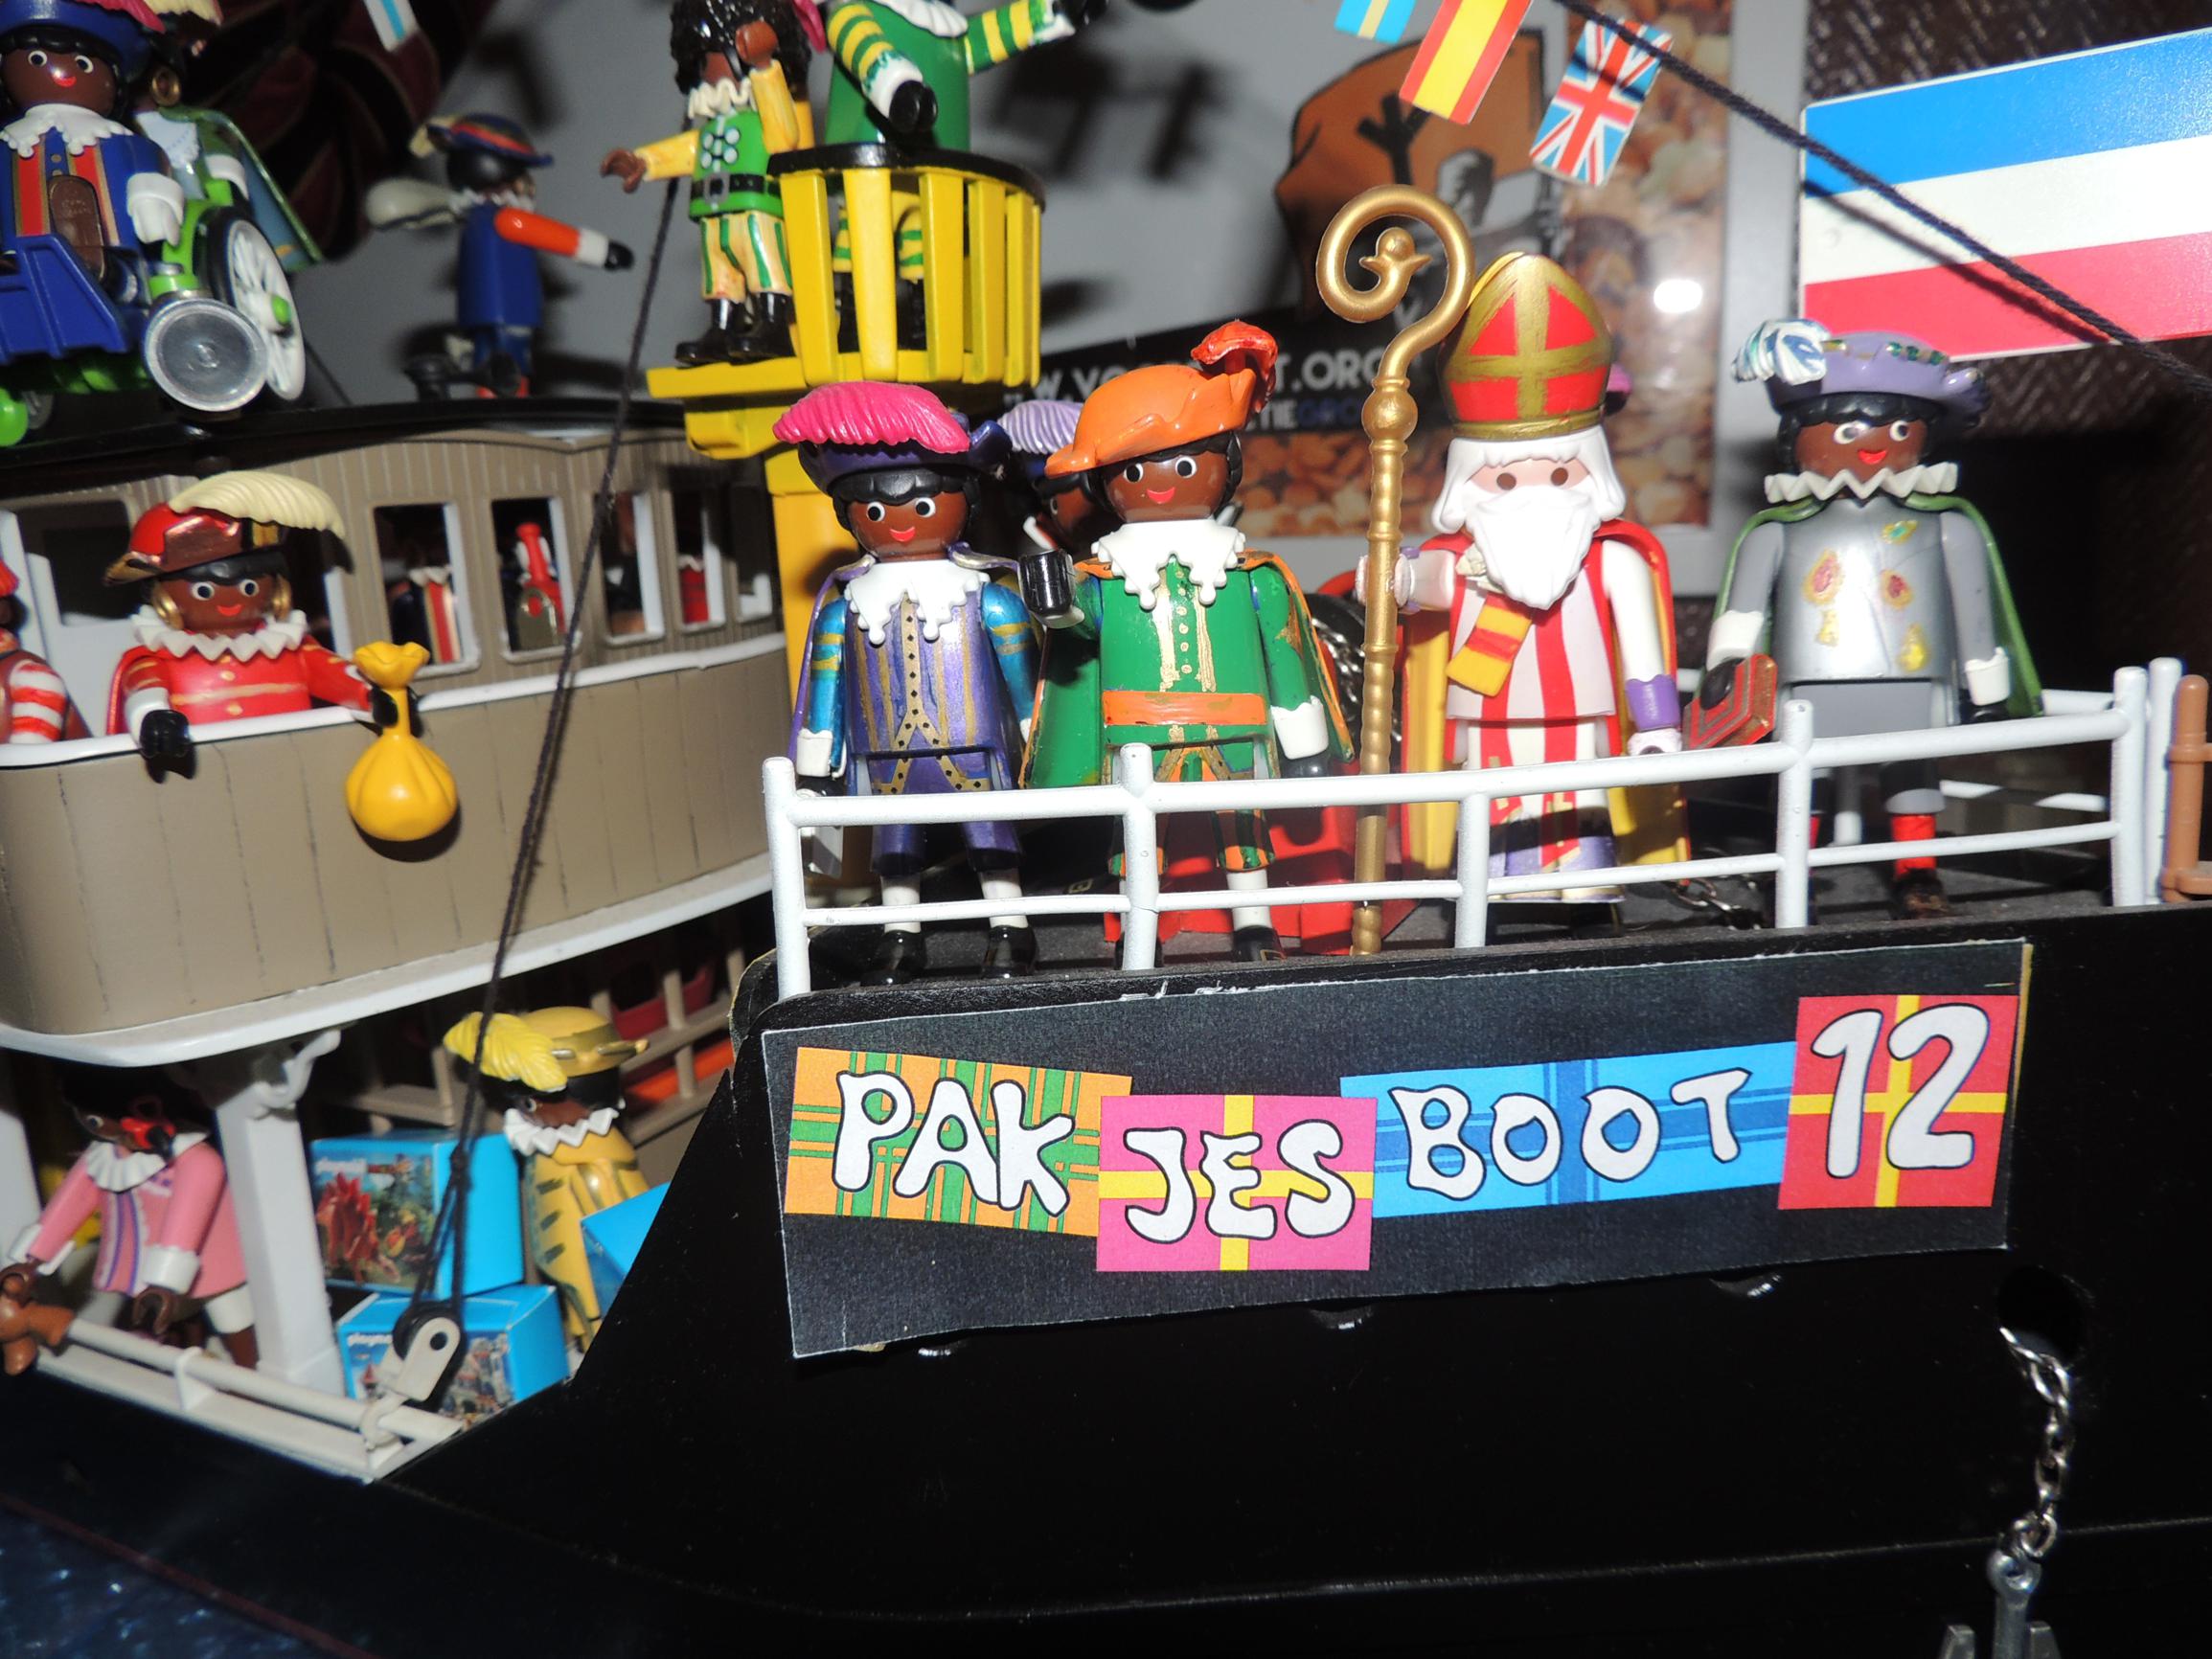 Spelling begrijpen Mens Pieter Neefs Houdt van de Sint: pakjesboot in Playmobil is pronkstuk  (Wuustwezel) | Gazet van Antwerpen Mobile